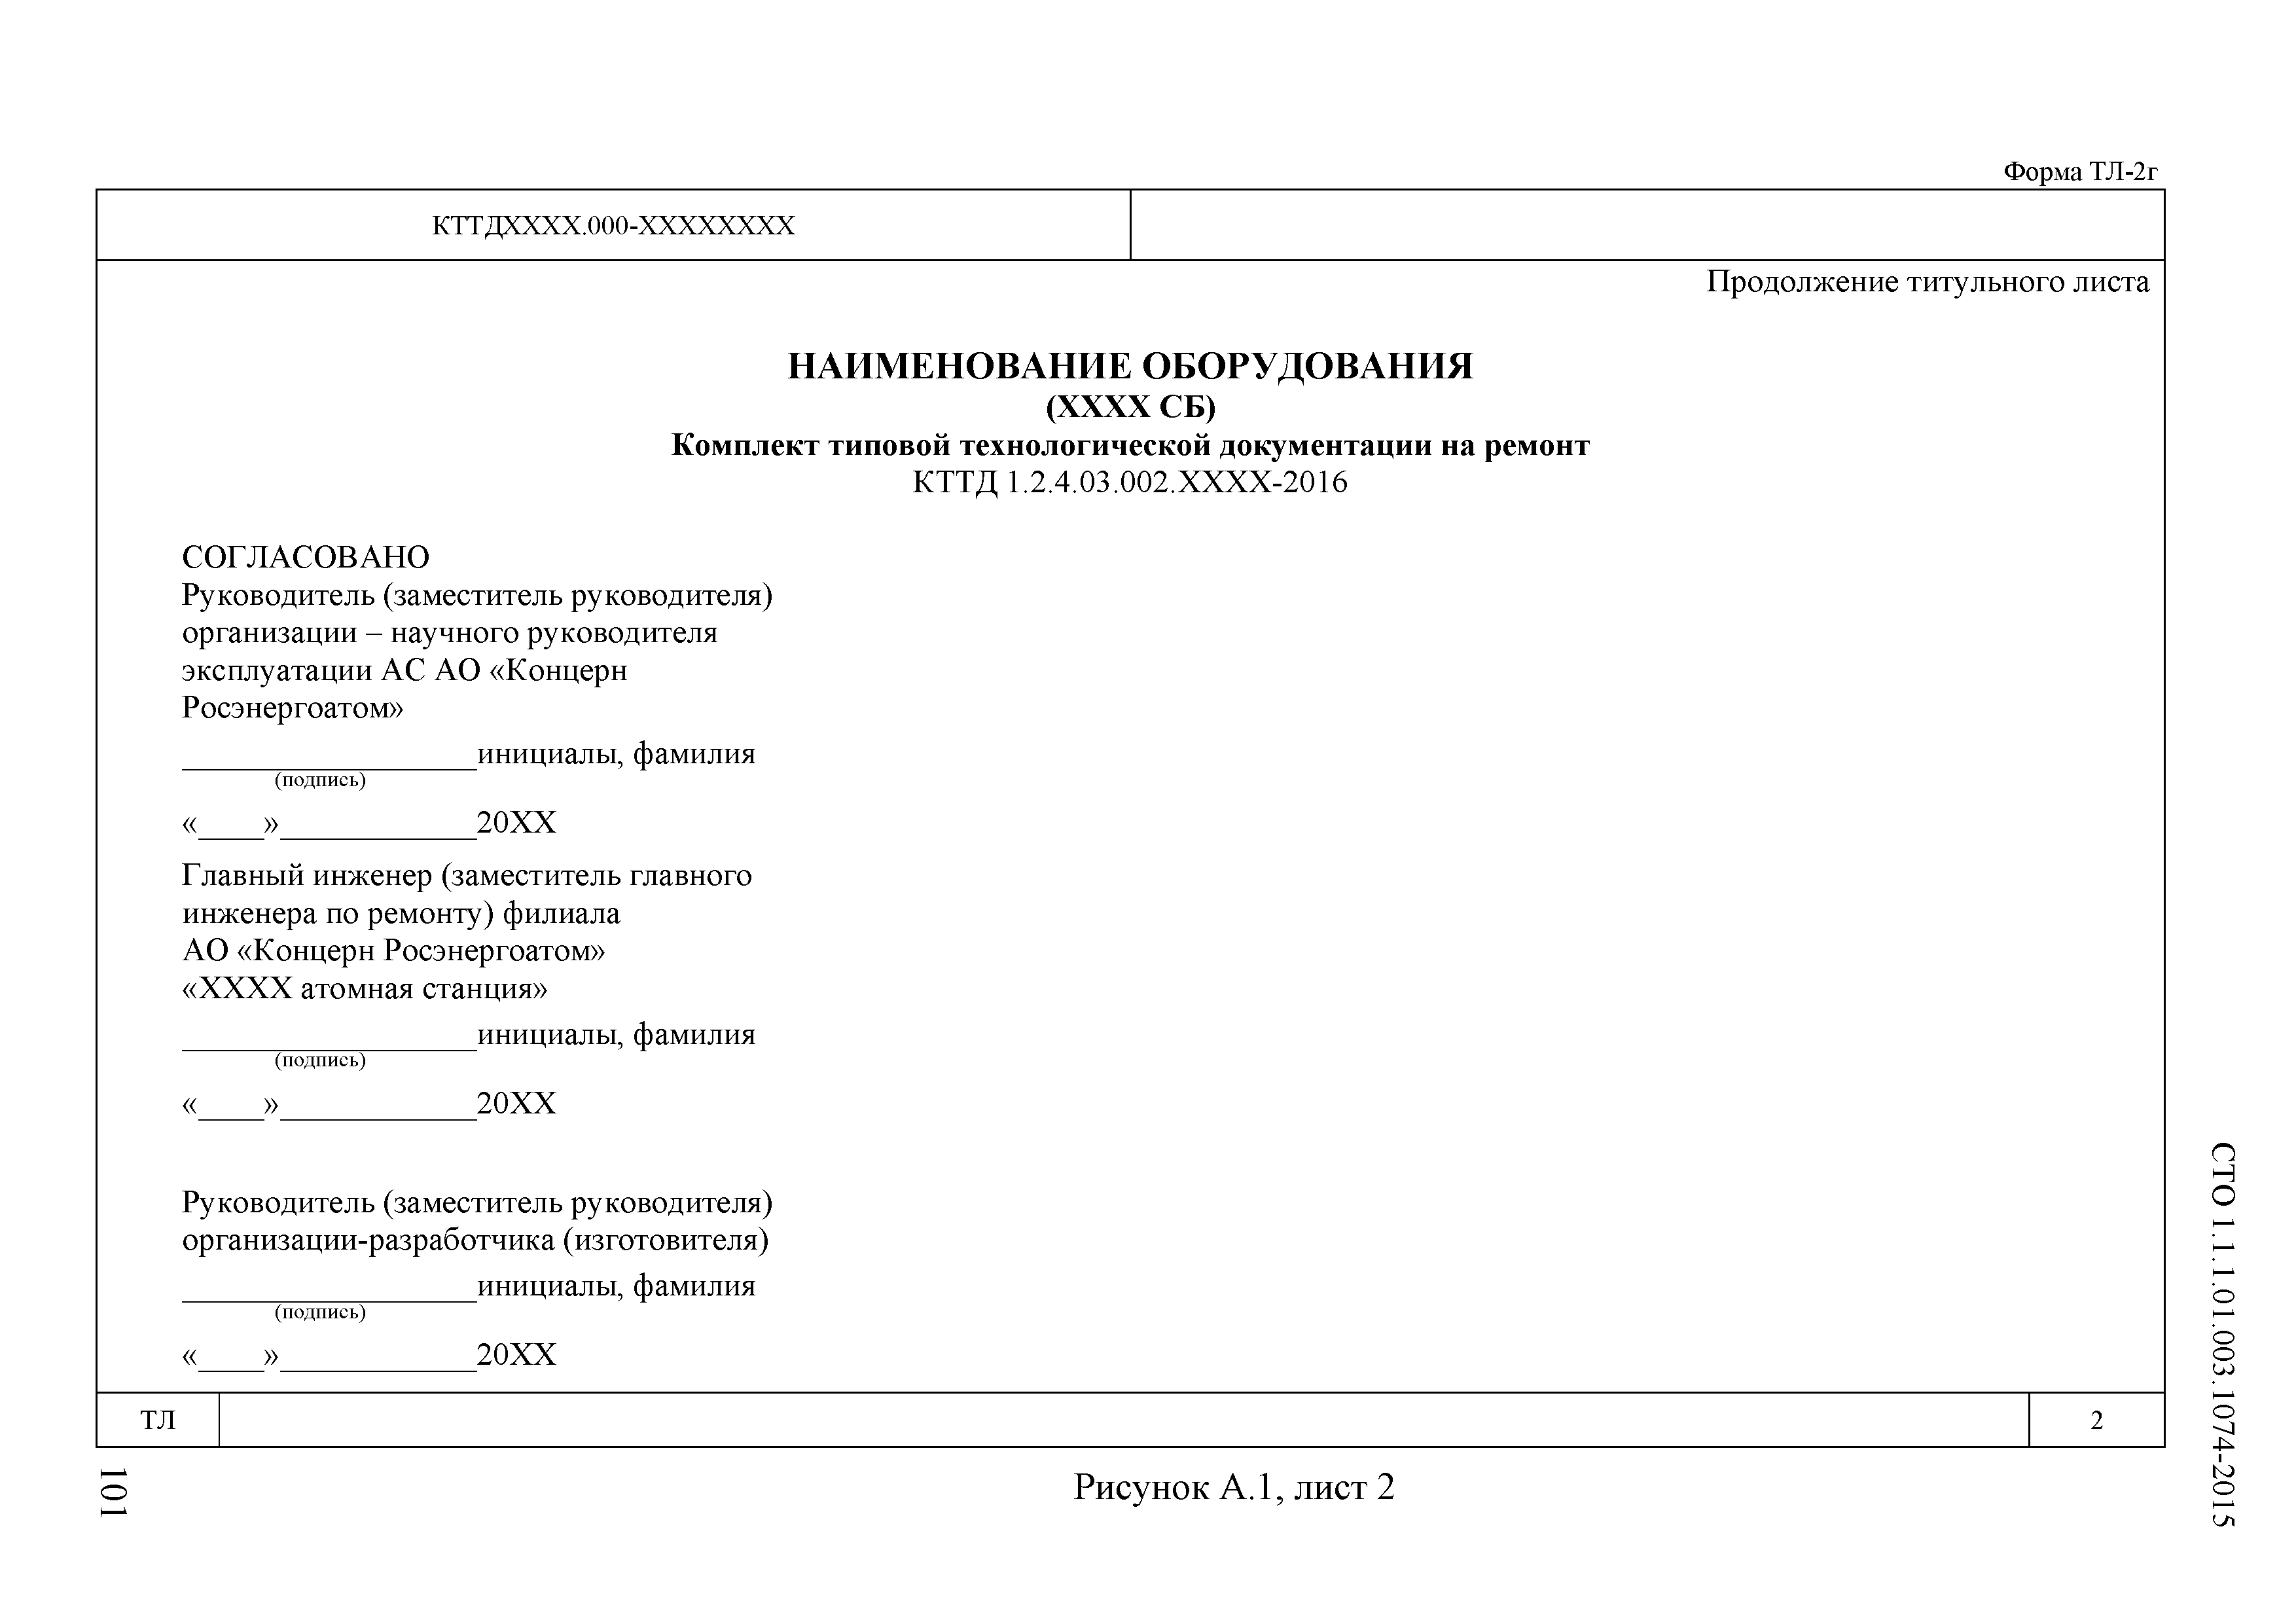 СТО 1.1.1.01.003.1074-2015